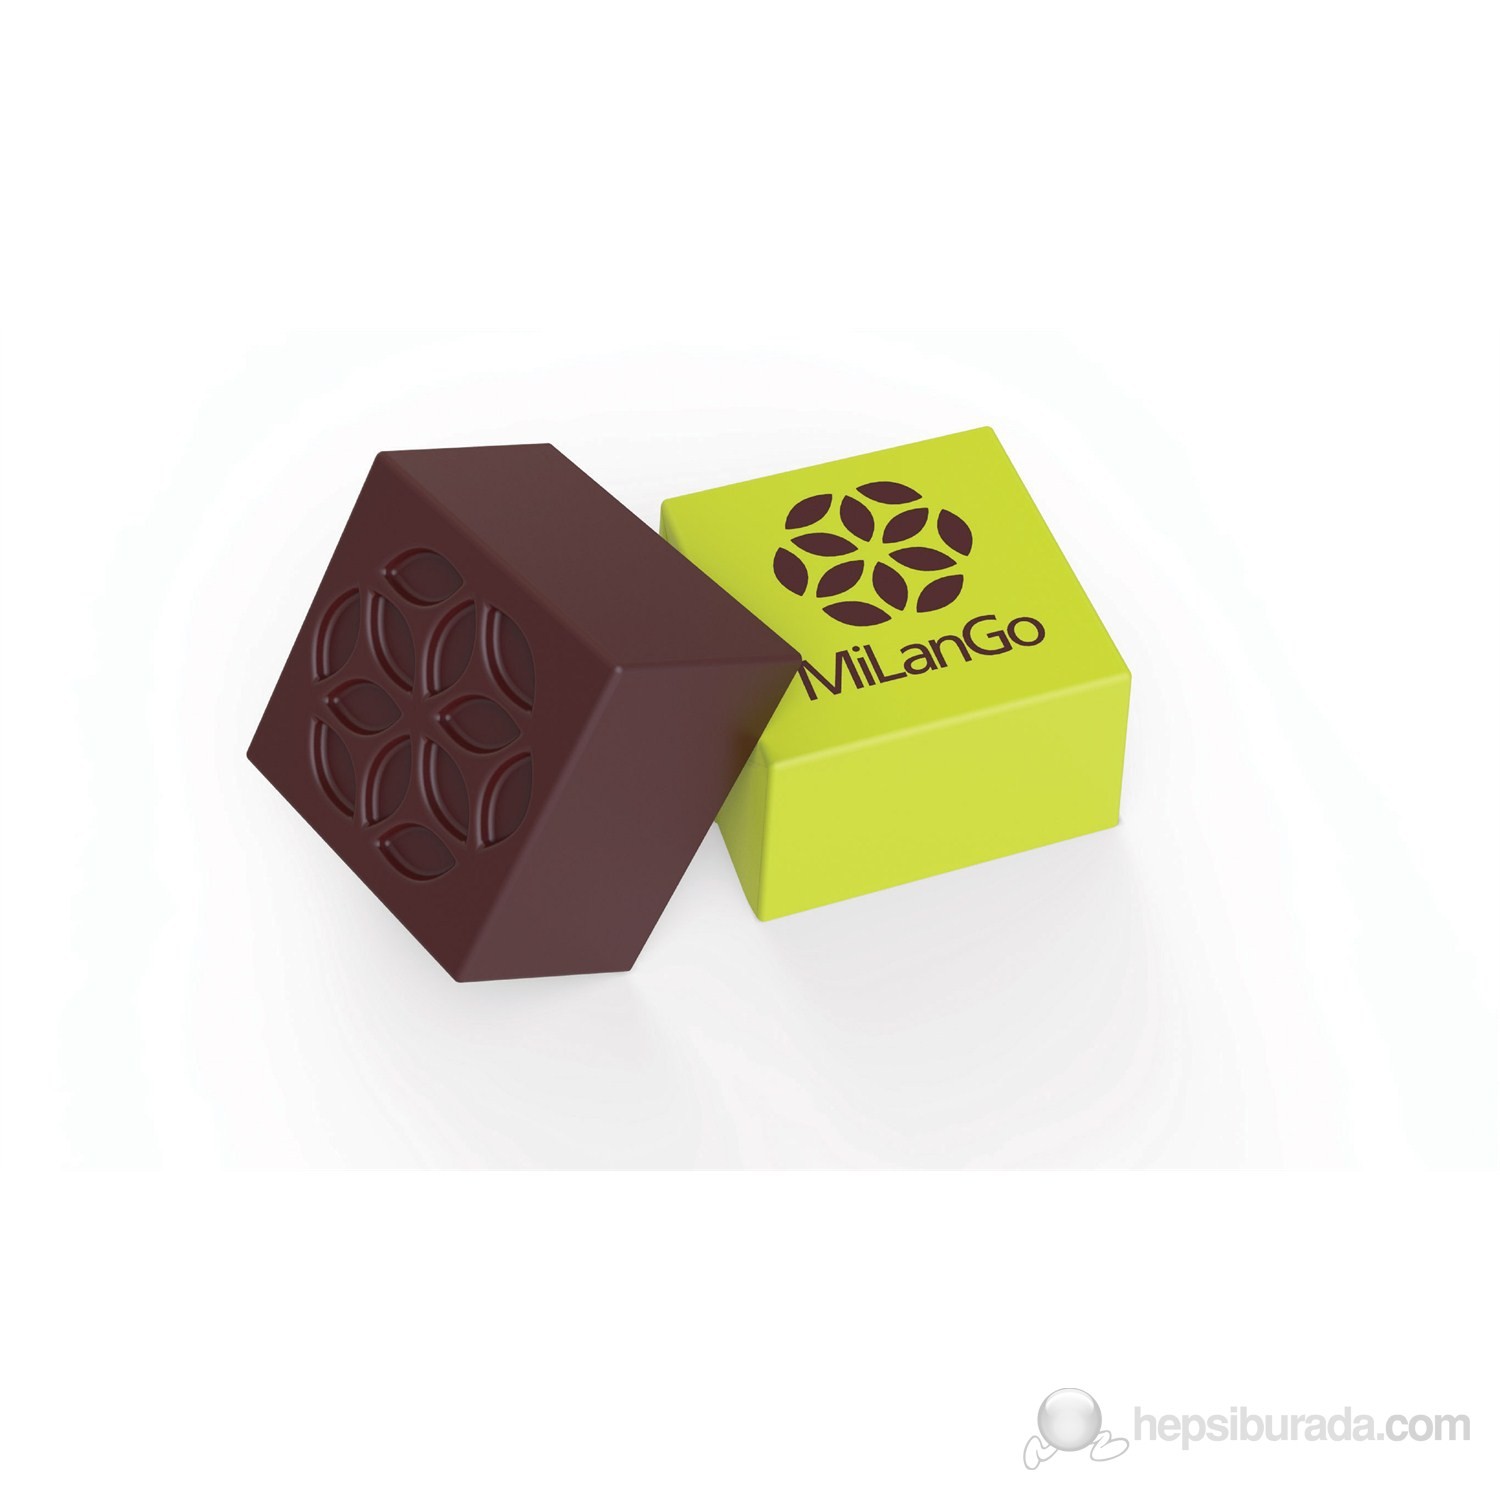 Karim Rashid Özel Tasarımlı Milango Antep Fıstıklı Çikolata Fiyatı